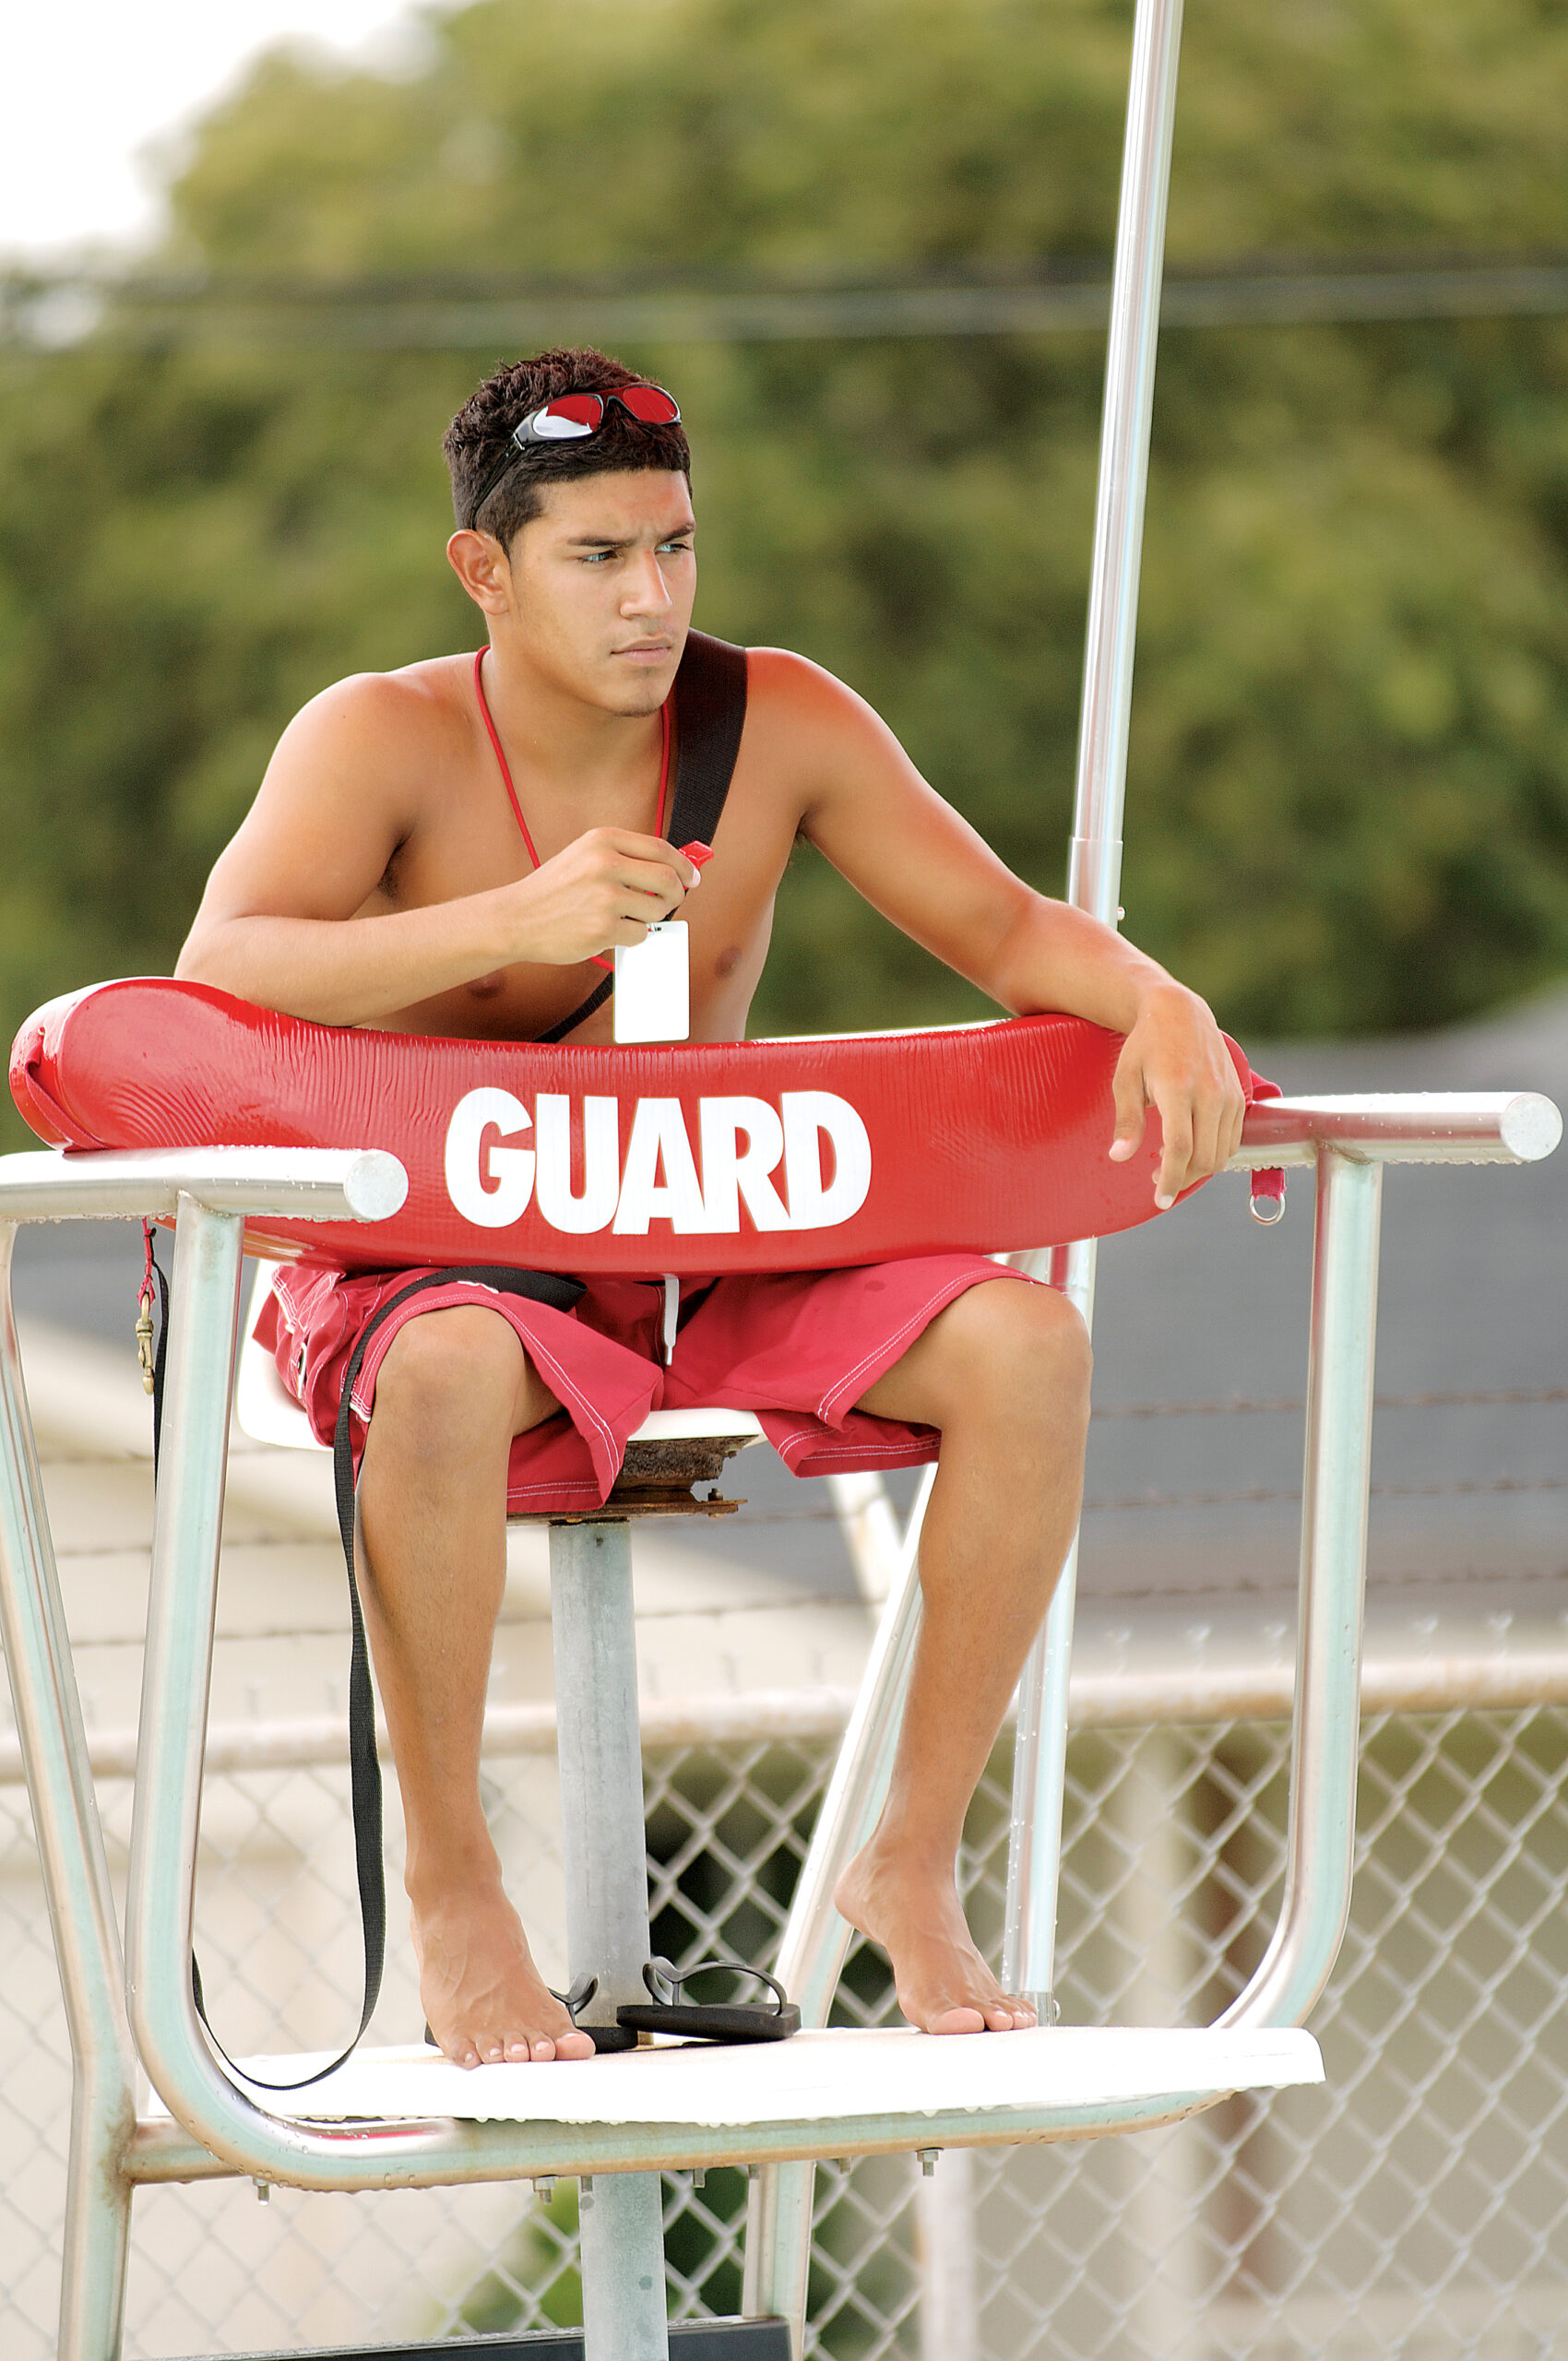 O-AT-KA Lifeguard Course